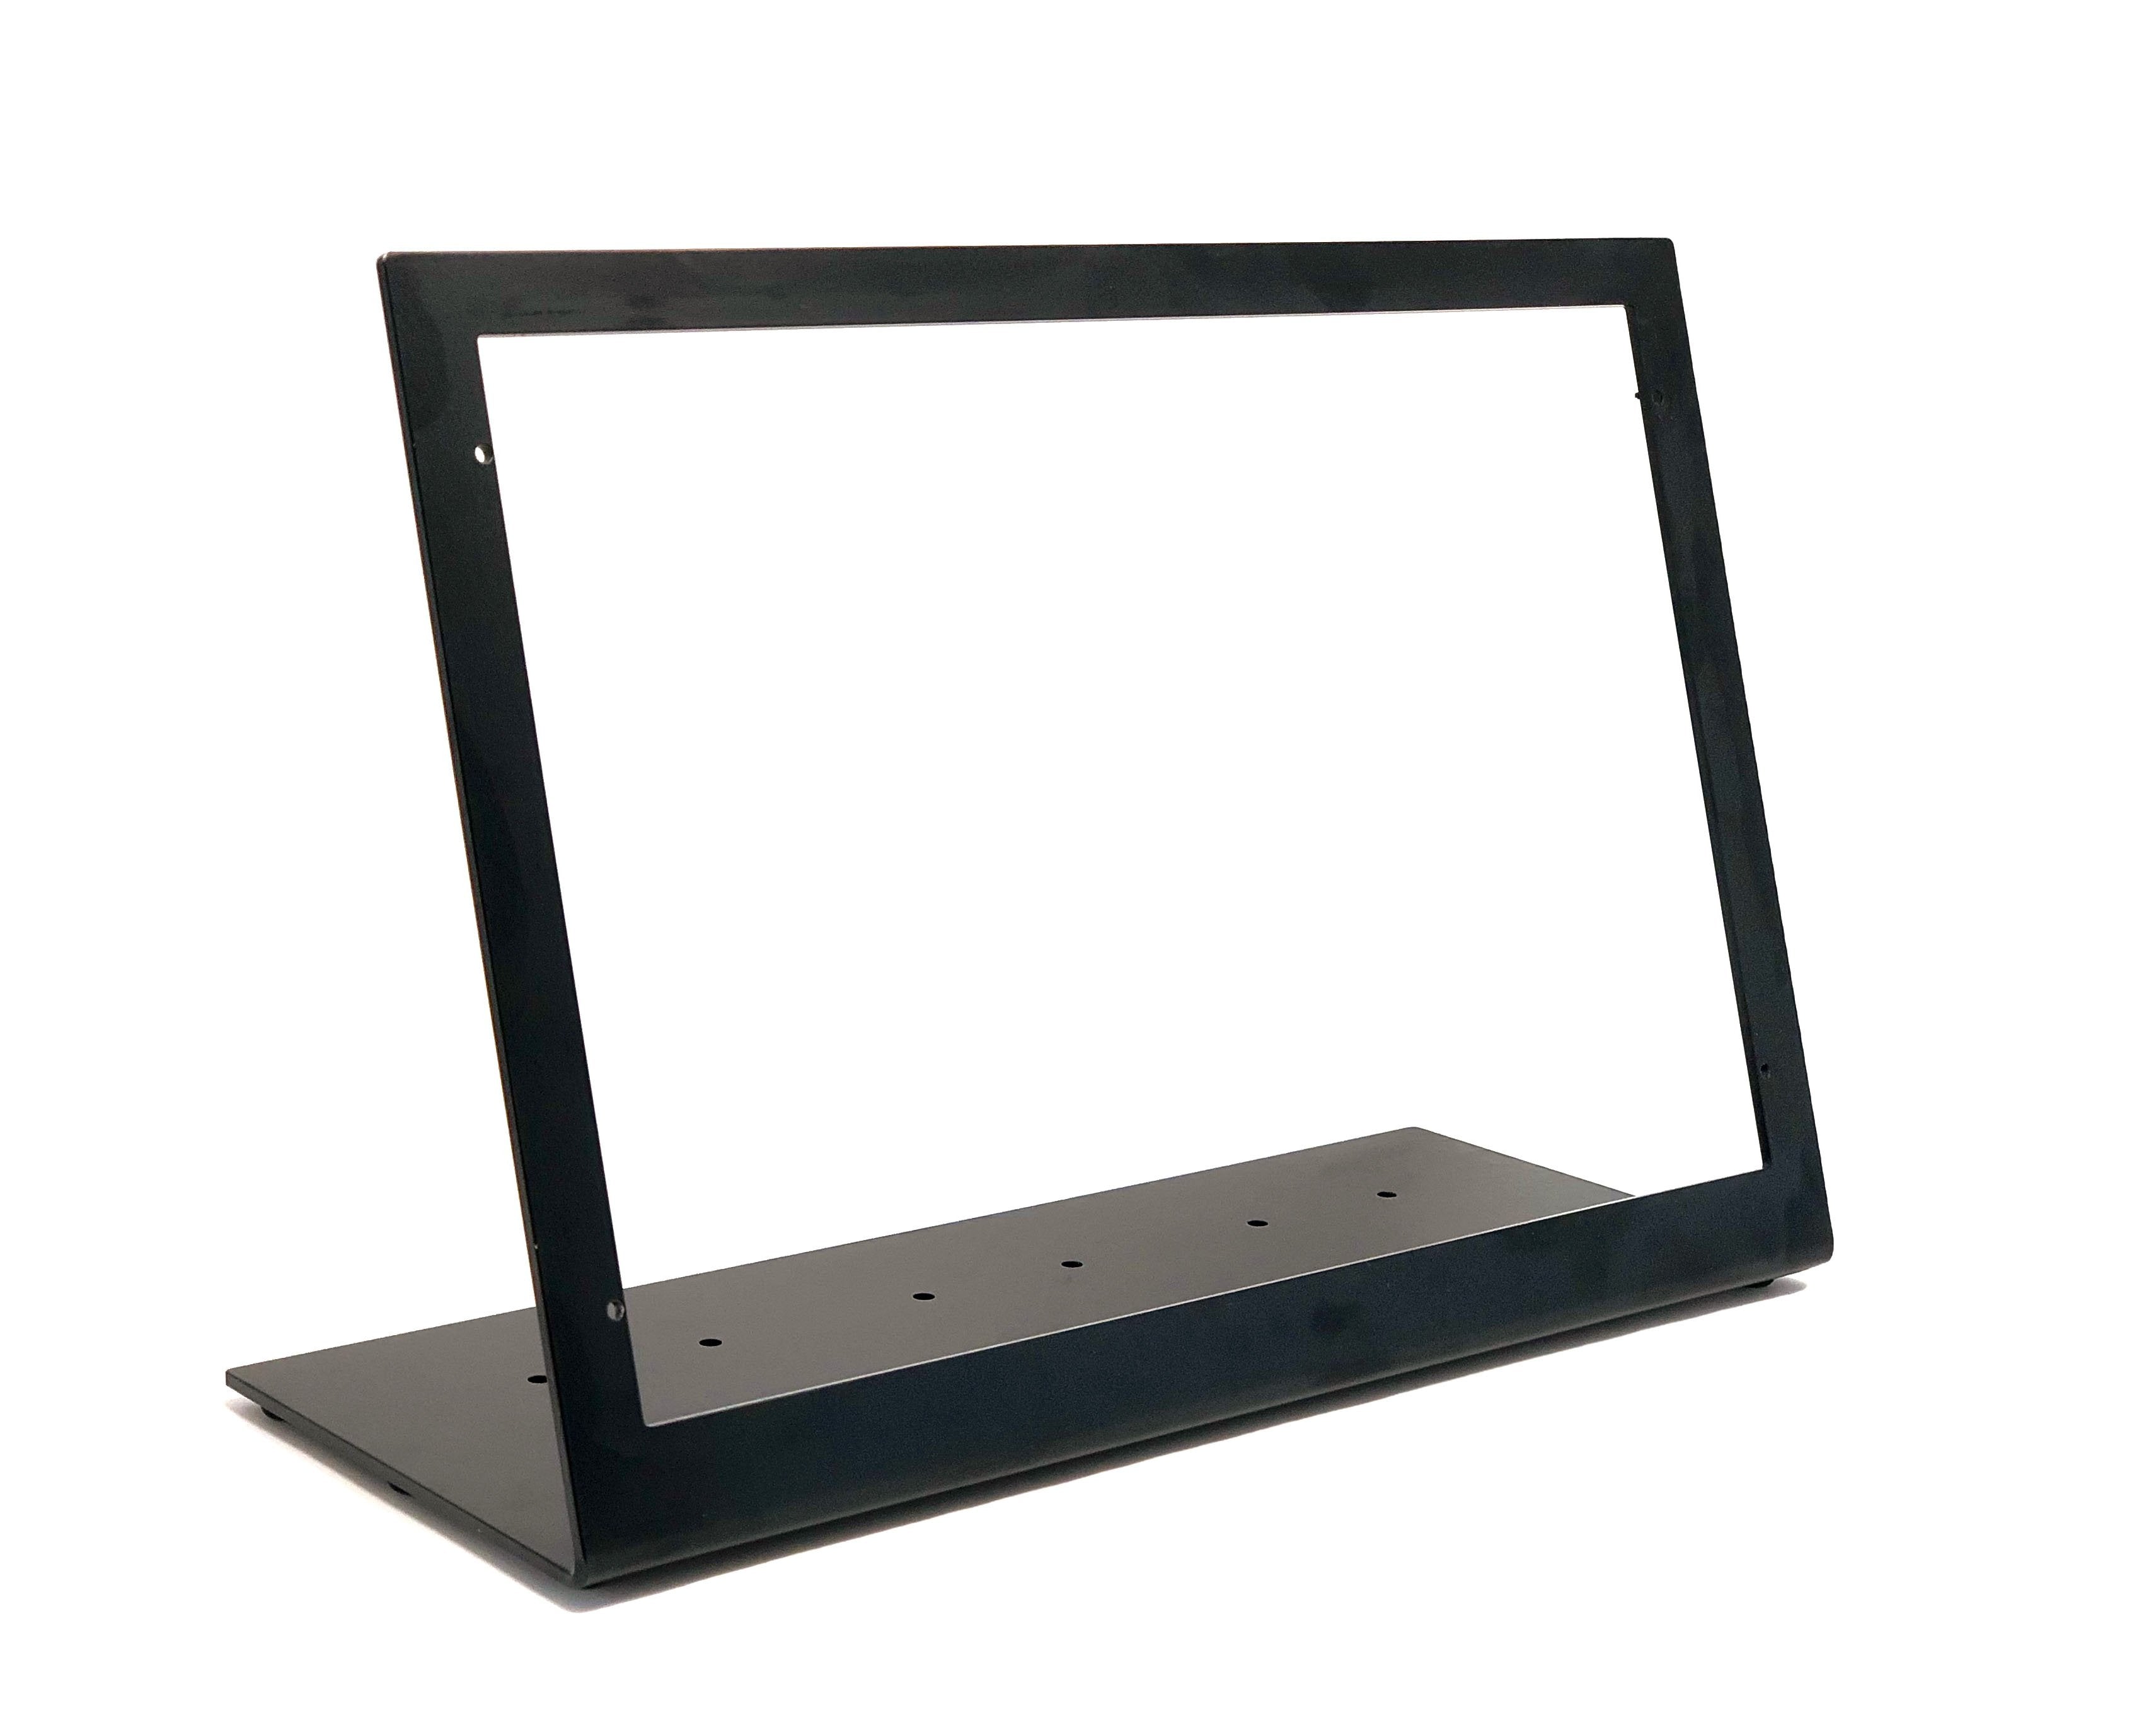 Desktop stand for RealSimGear G1000 PFD/MFD